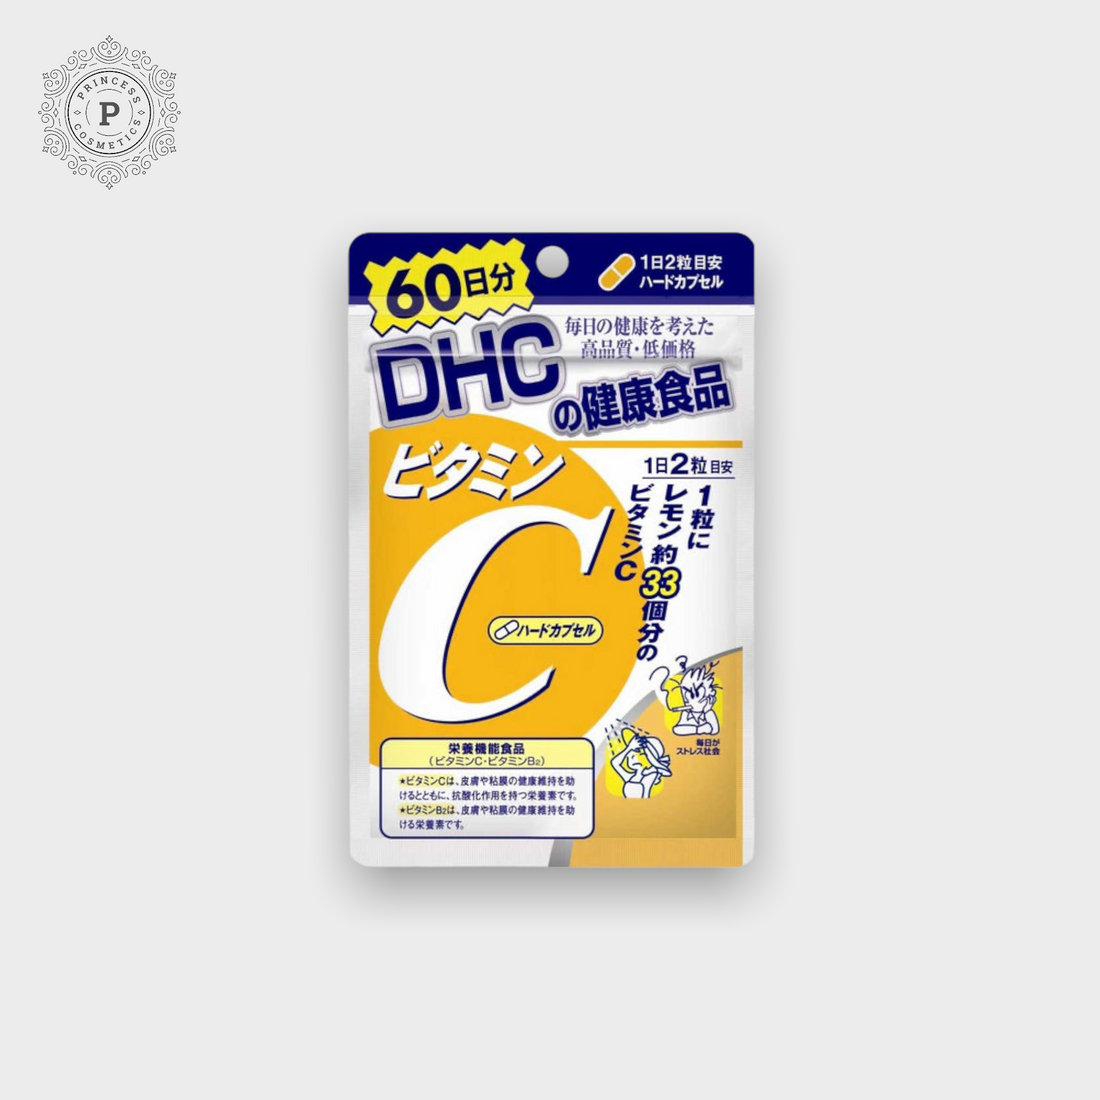 DHC Vitamin C Supplement 120 Capsules (60 Days)